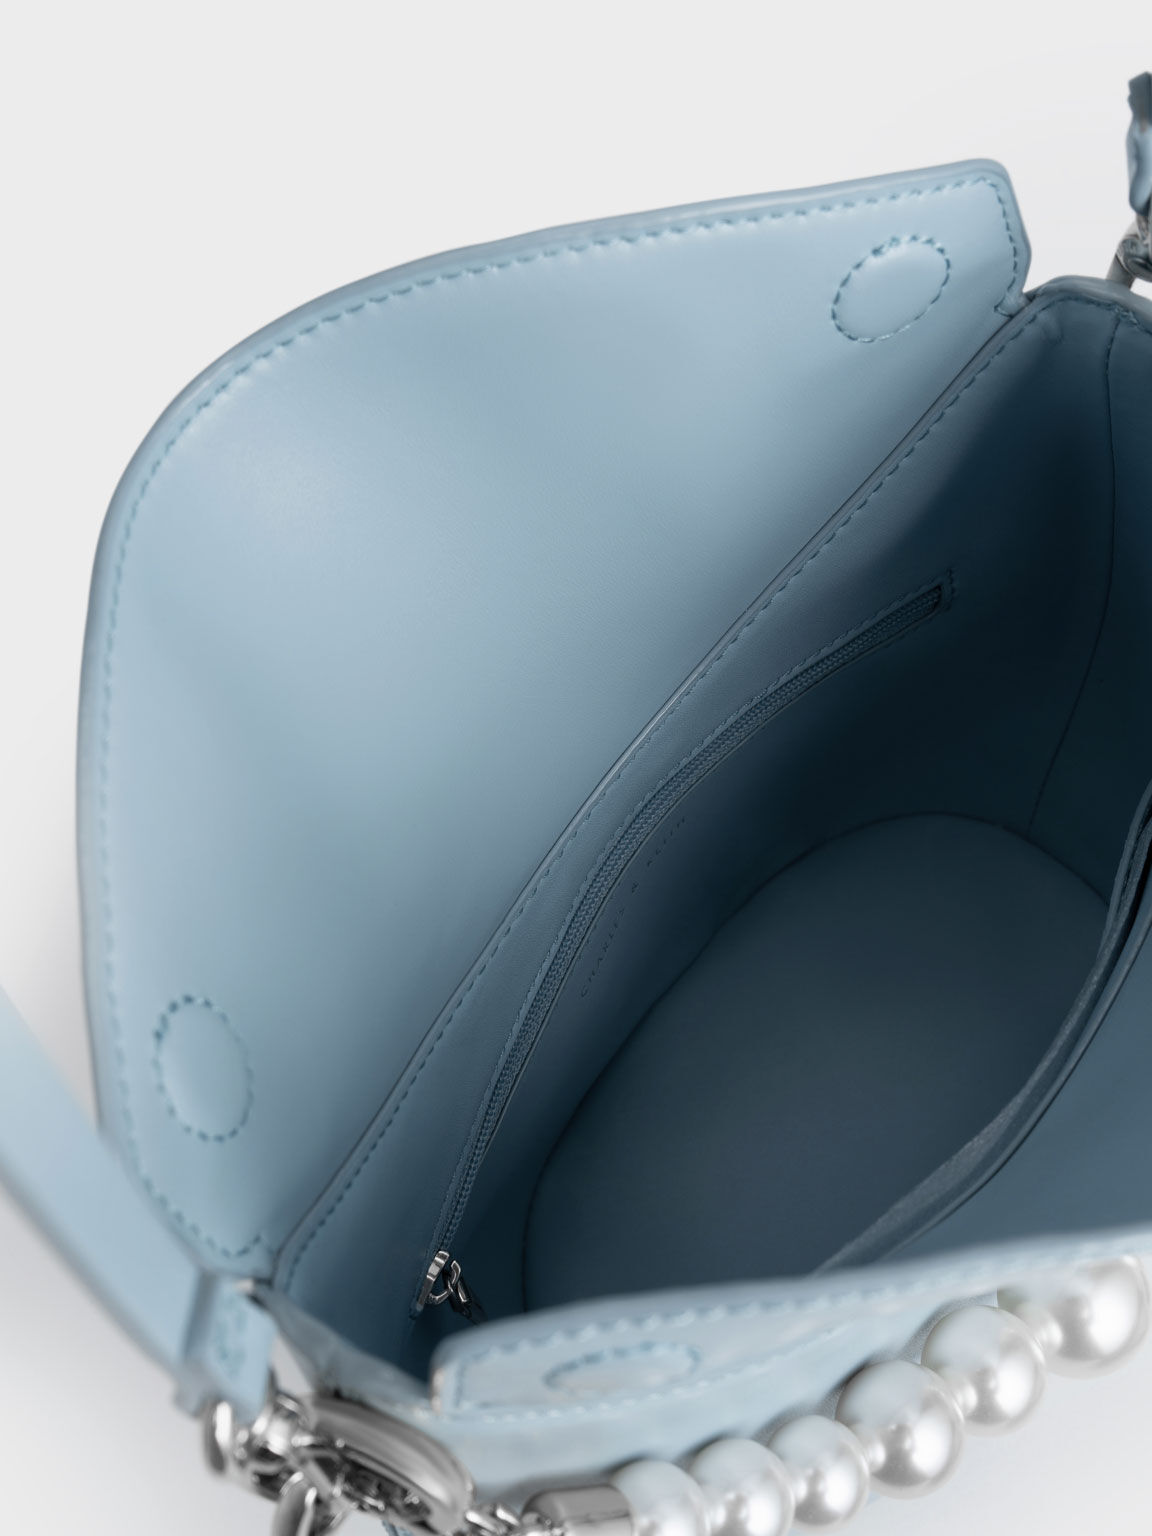 Bead-Embellished Knotted Handle Bag, Light Blue, hi-res